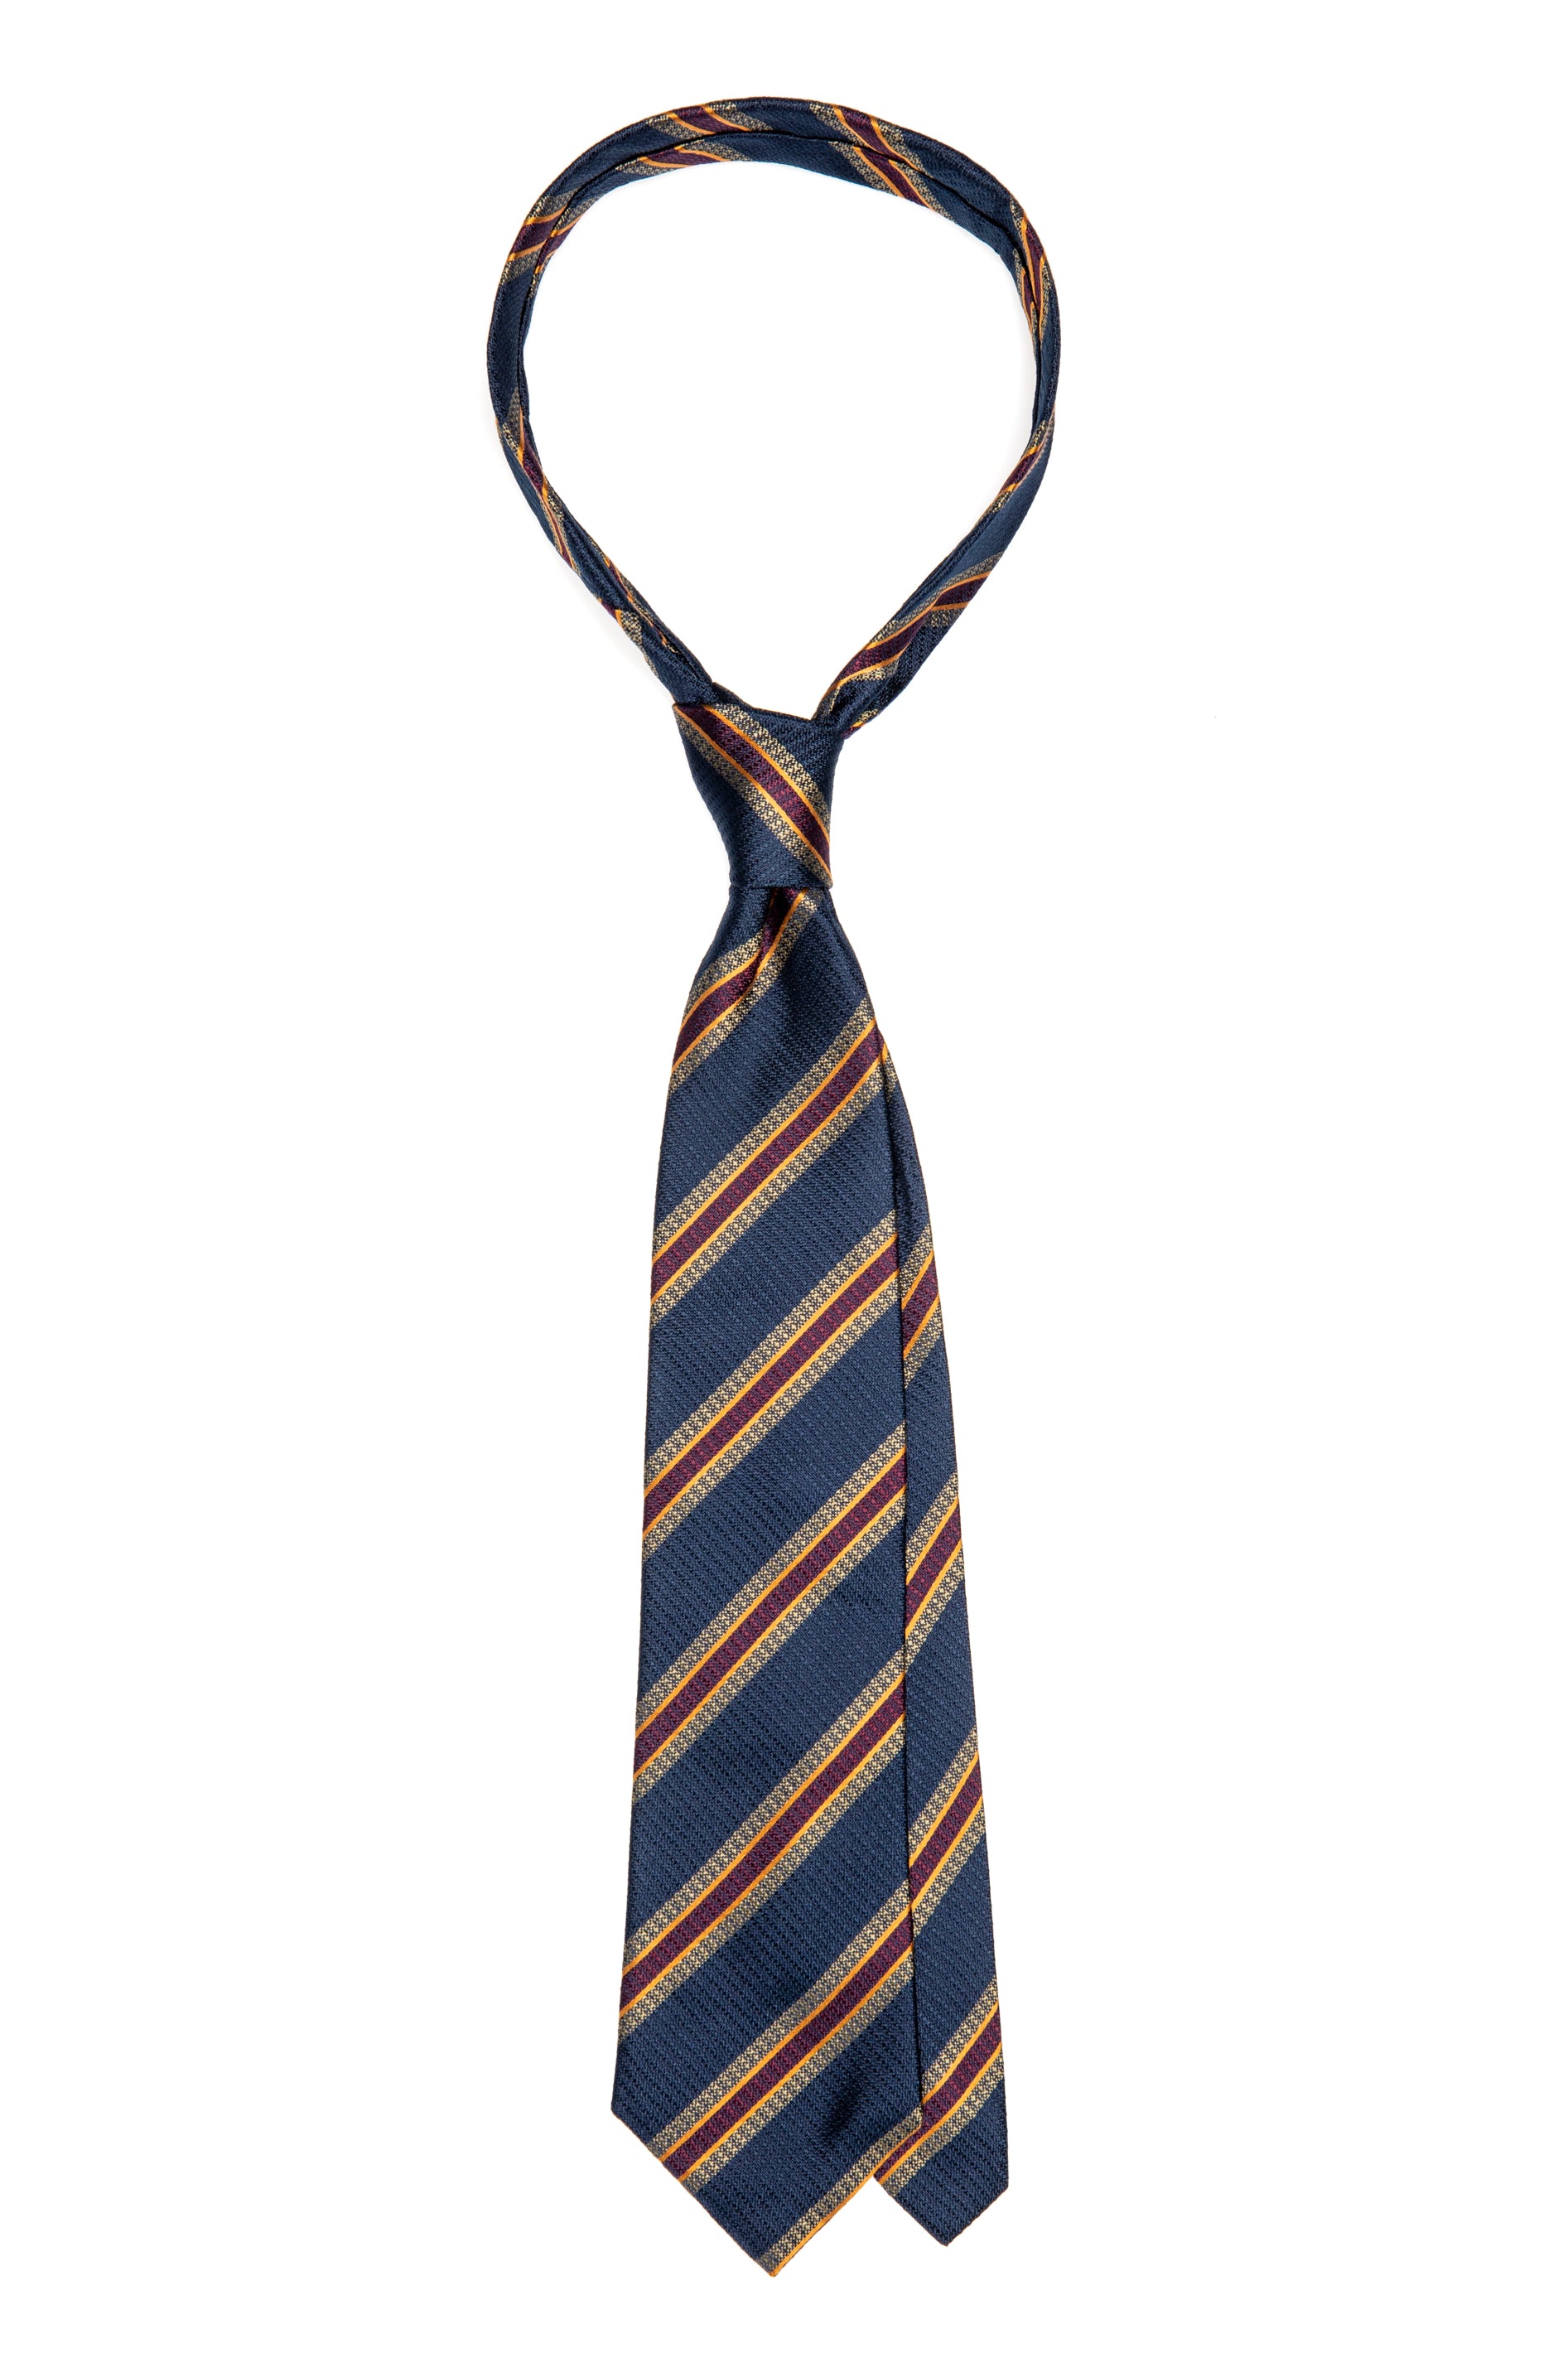 Cravatta in seta blu navy con righe bordeaux